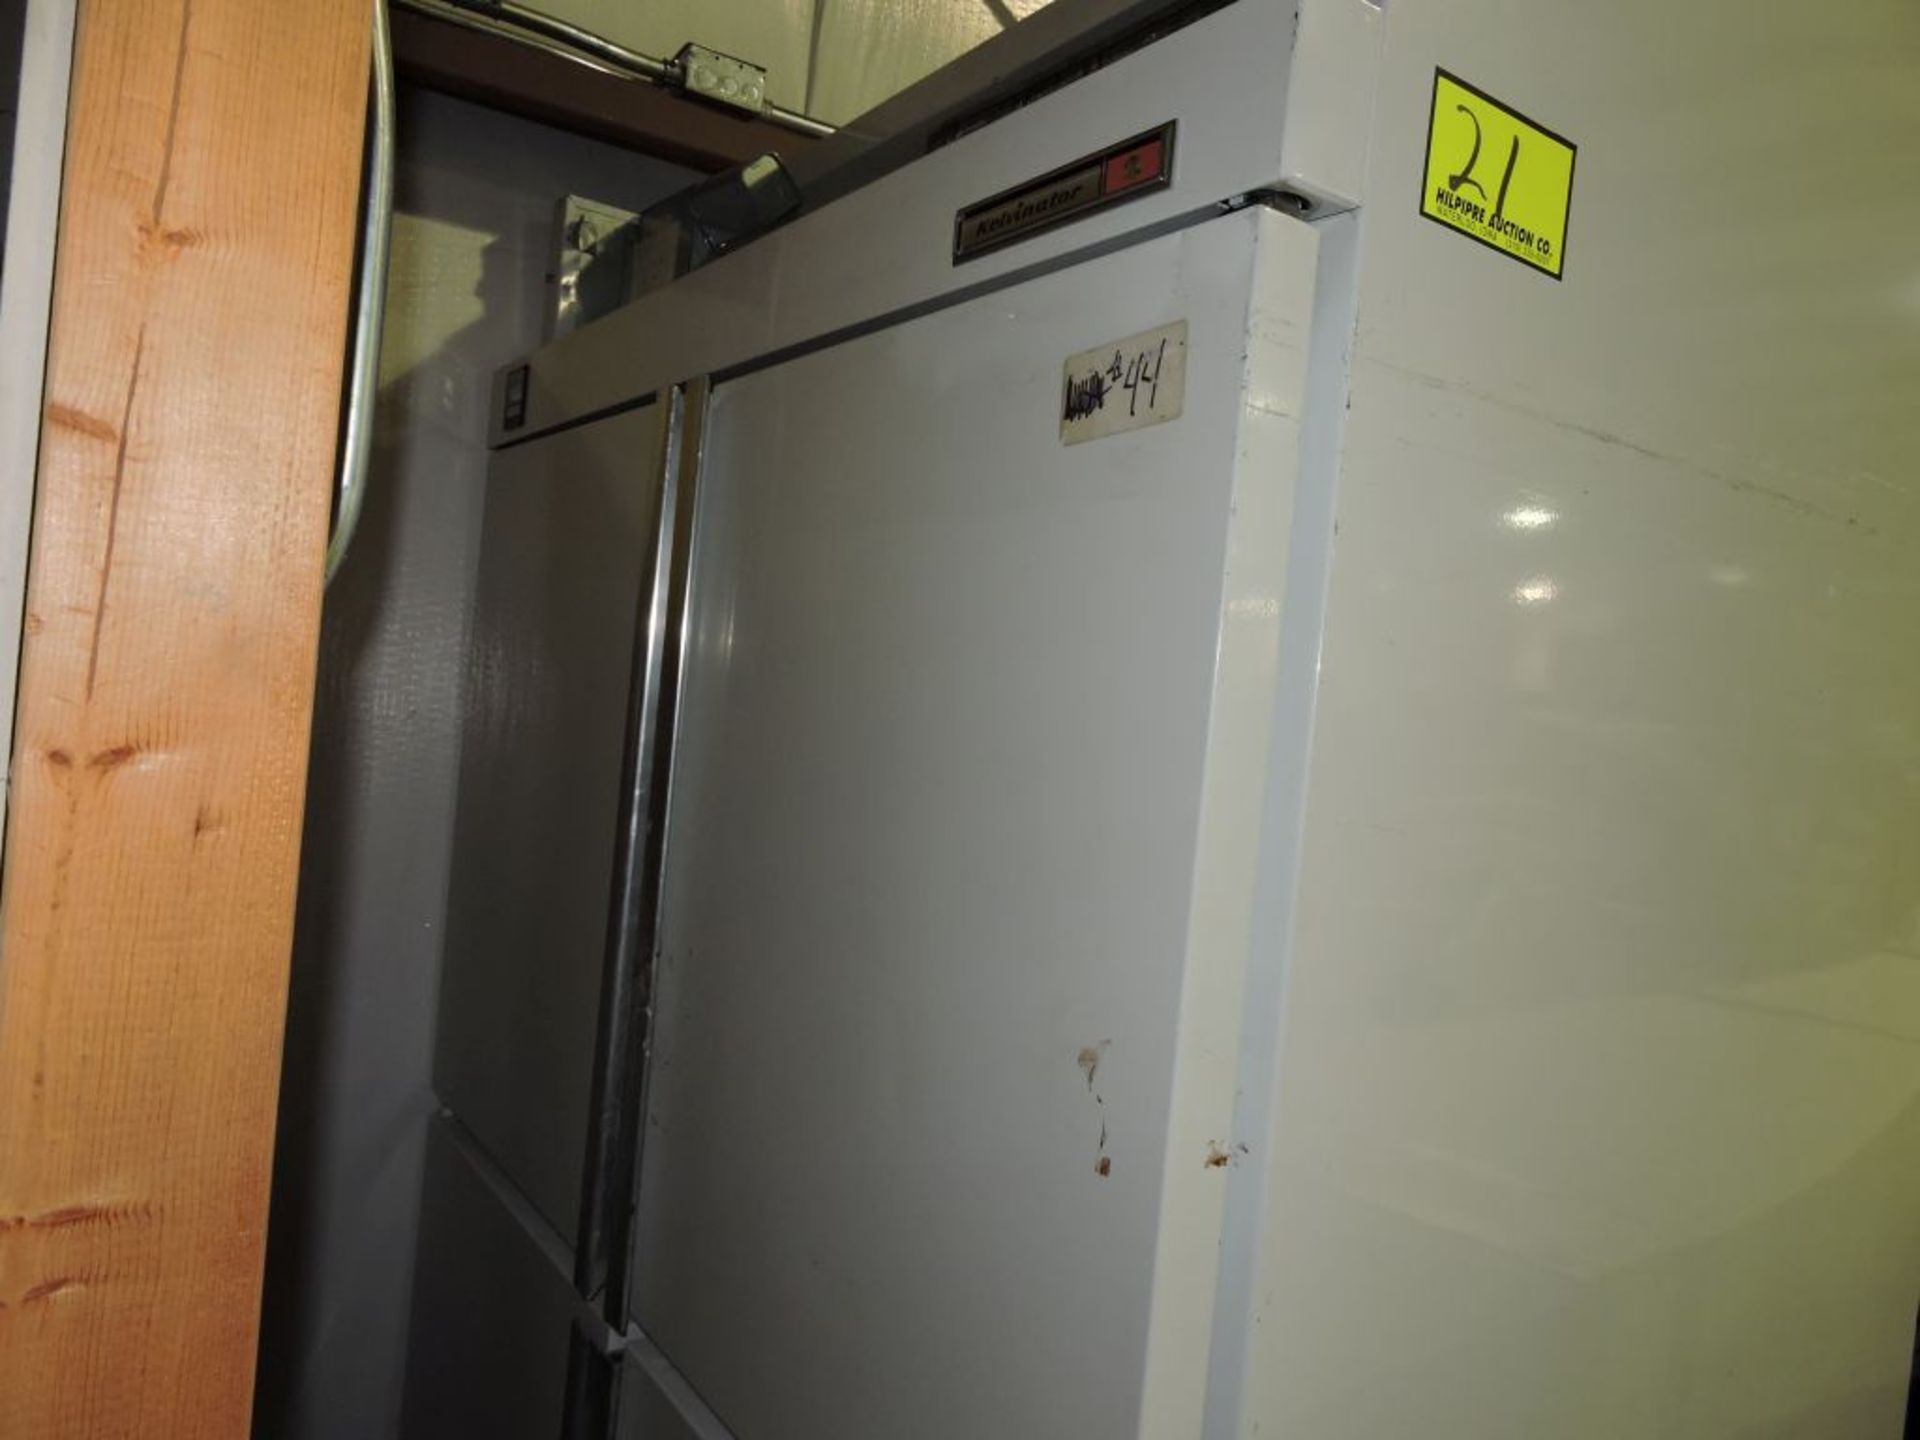 Kelvinator freezer, model TSCHSQL-4, s/n C1167881. (Loading fee $50)